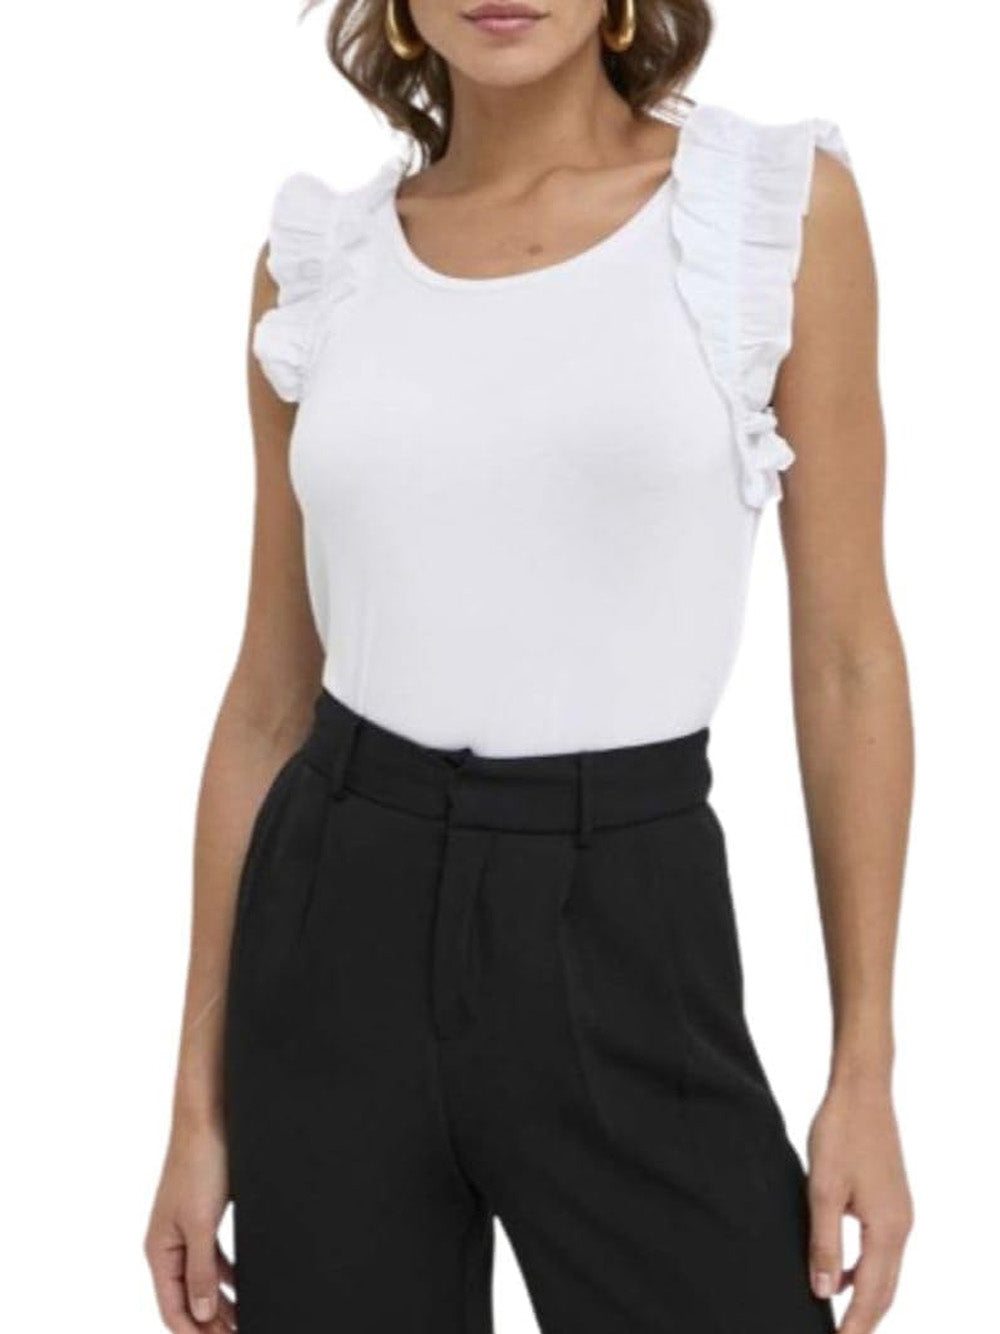 LIU.JO T-shirt Donna - Bianco modello VA4174JS360